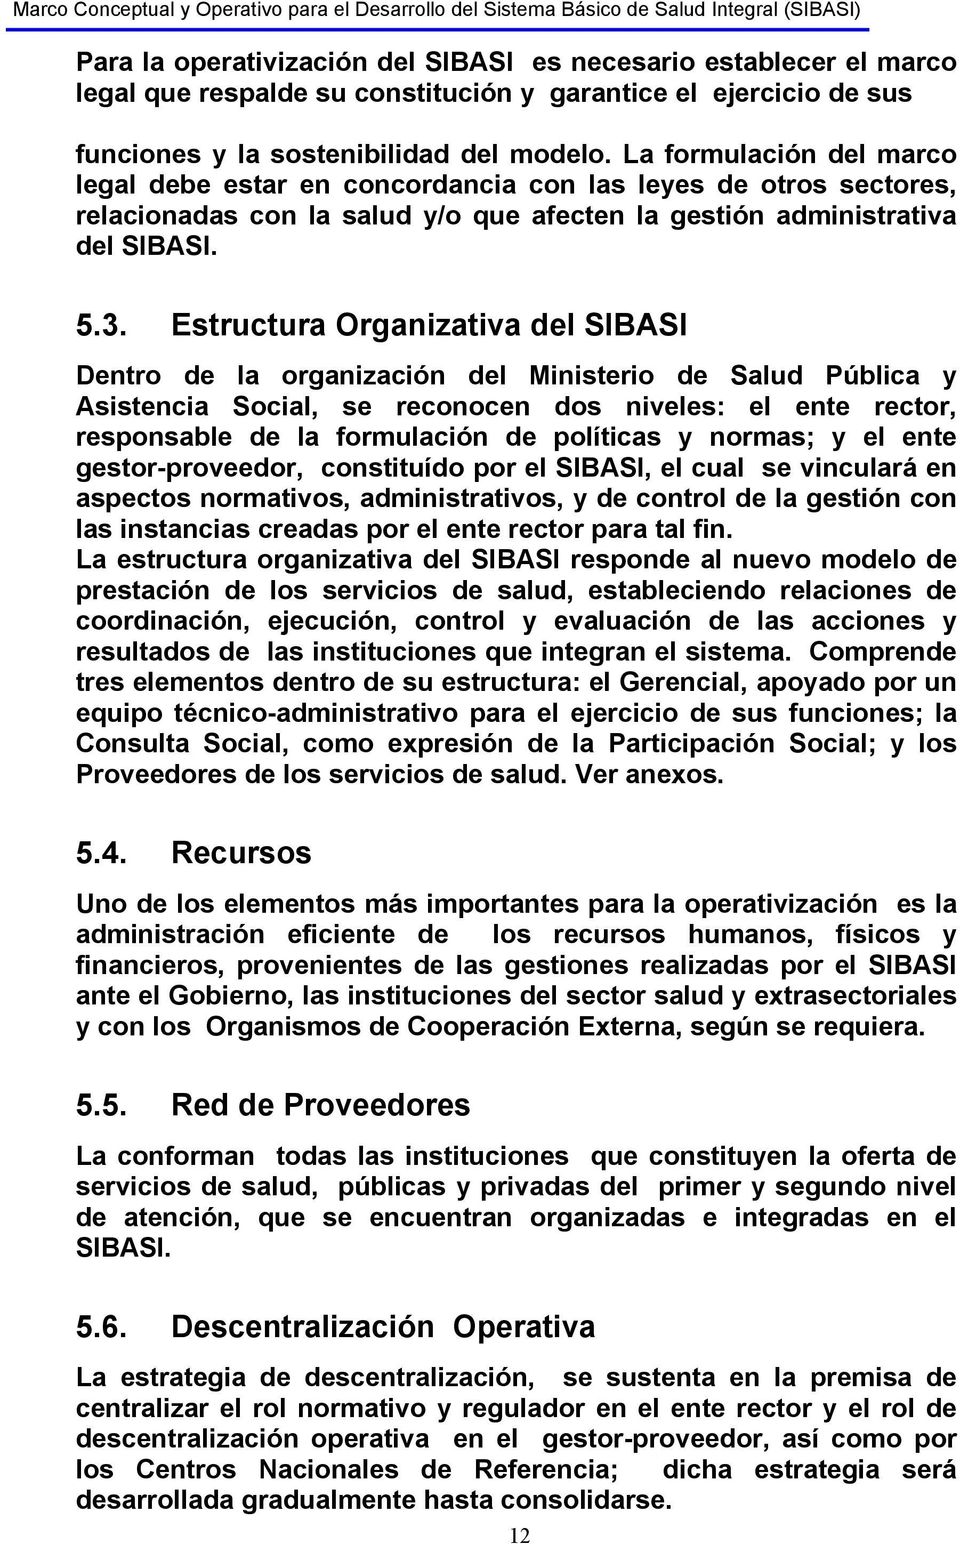 Estructura Organizativa del SIBASI Dentro de la organización del Ministerio de Salud Pública y Asistencia Social, se reconocen dos niveles: el ente rector, responsable de la formulación de políticas